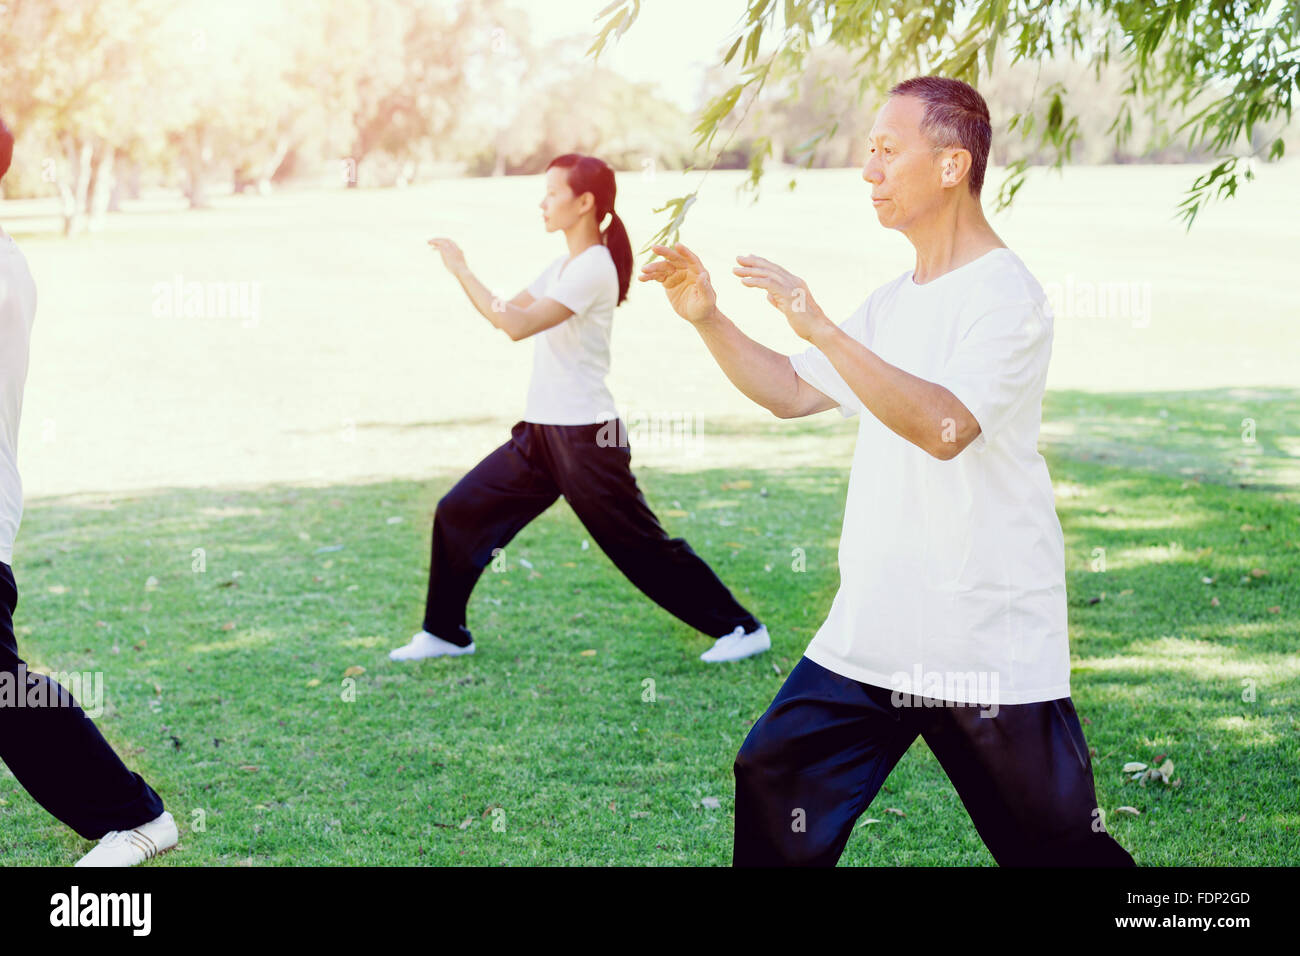 Personas practicando Tai chi en el parque durante los meses de verano Foto de stock